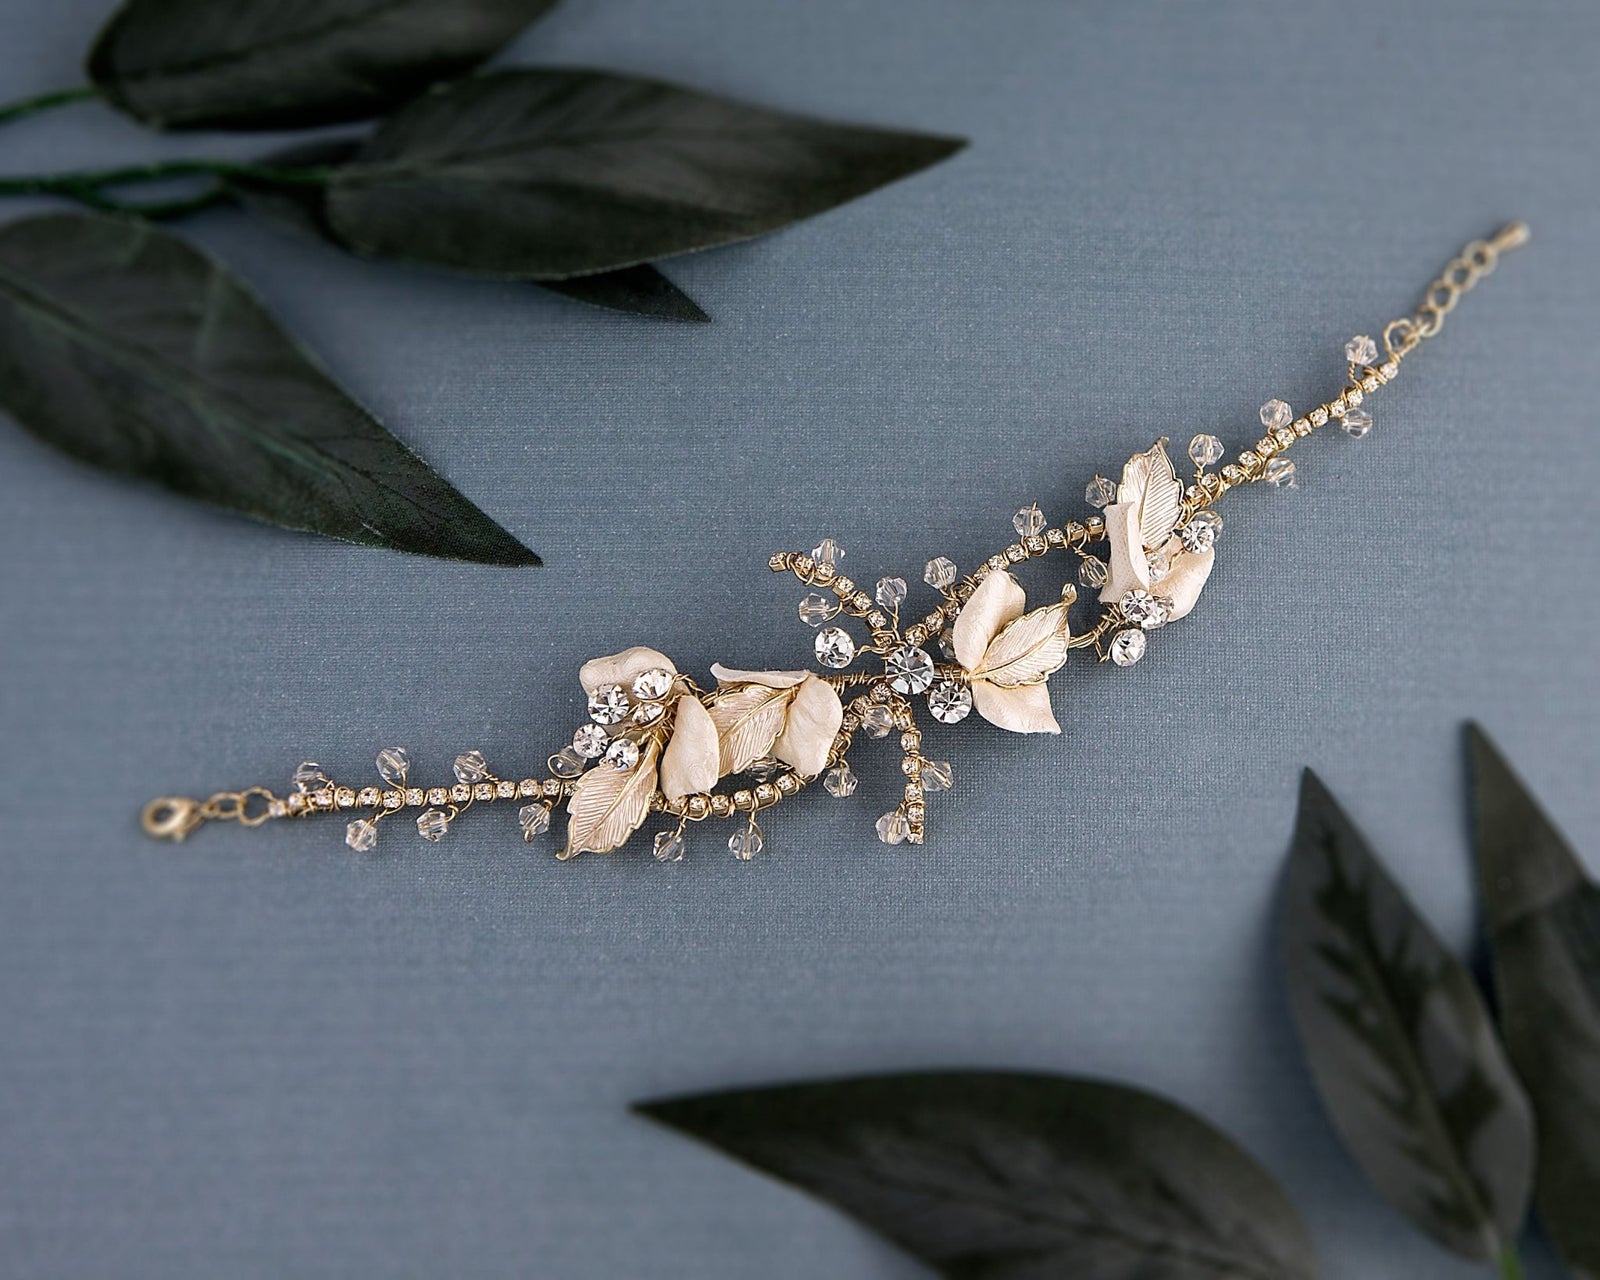 Hand-Made Crystal Petals Bracelet - Cassandra Lynne